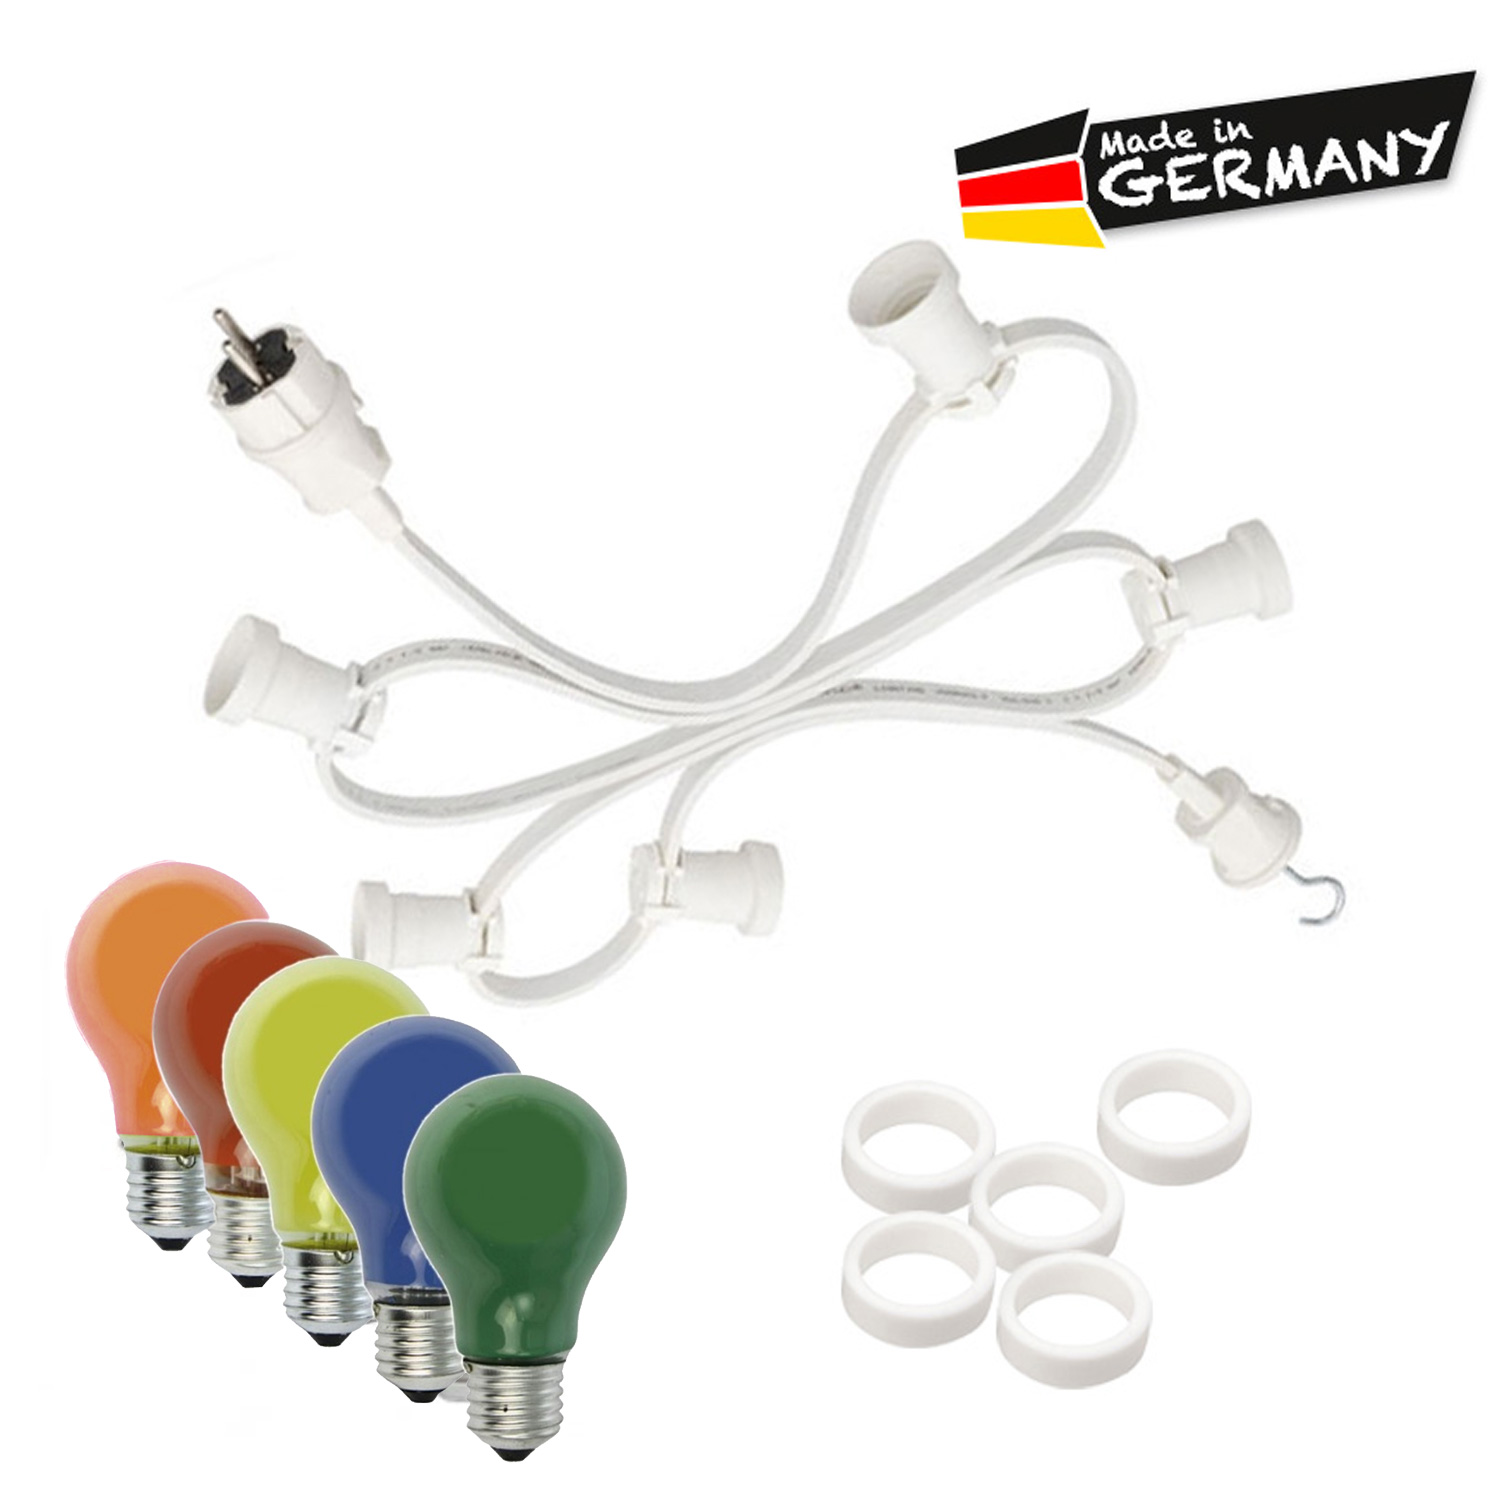 Illu-/Partylichterkette 40m - Außenlichterkette weiß - Made in Germany - 60 x bunte 25W Glühlampen